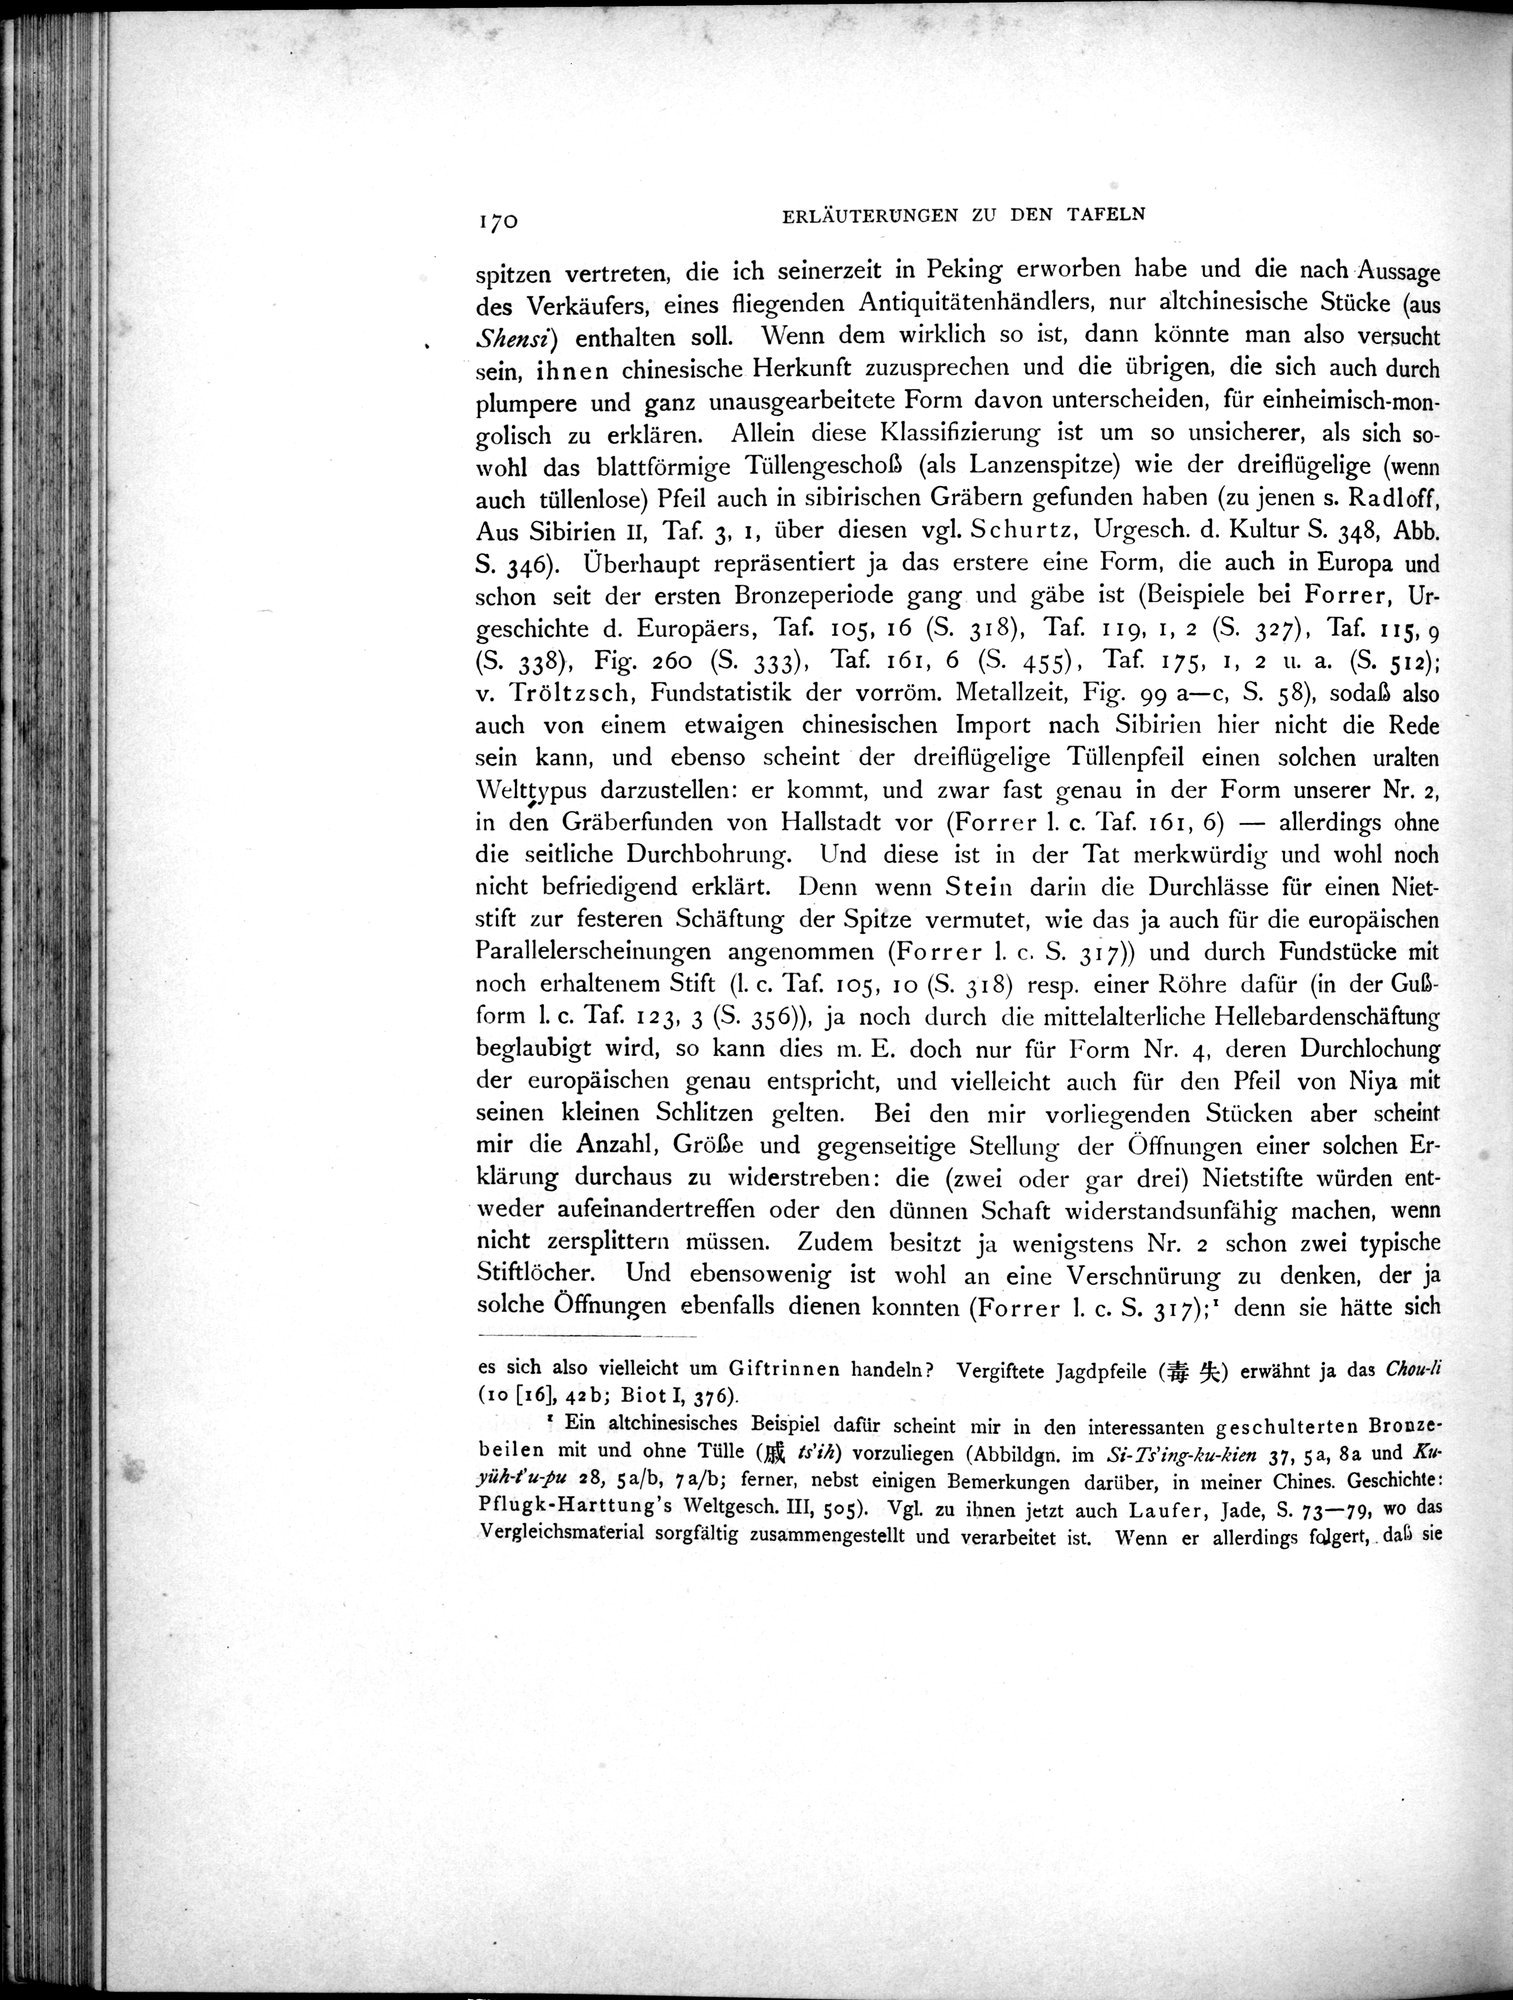 Die Chinesischen Handschriften- und sonstigen Kleinfunde Sven Hedins in Lou-lan : vol.1 / Page 194 (Grayscale High Resolution Image)